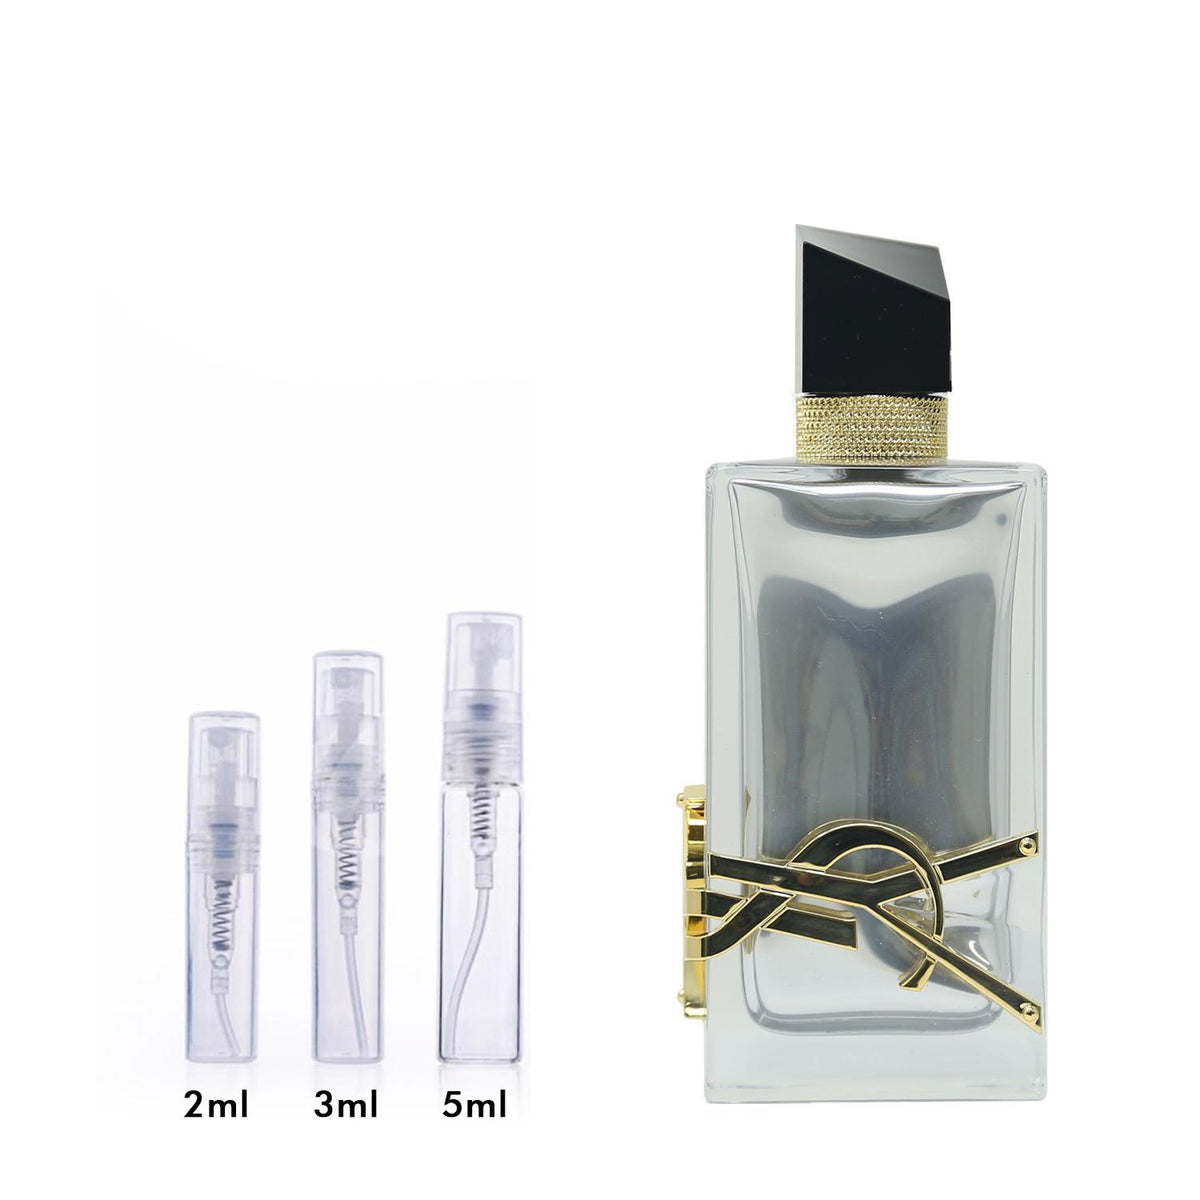 Fake vs Original Libre Yves Saint Laurent Perfume : u